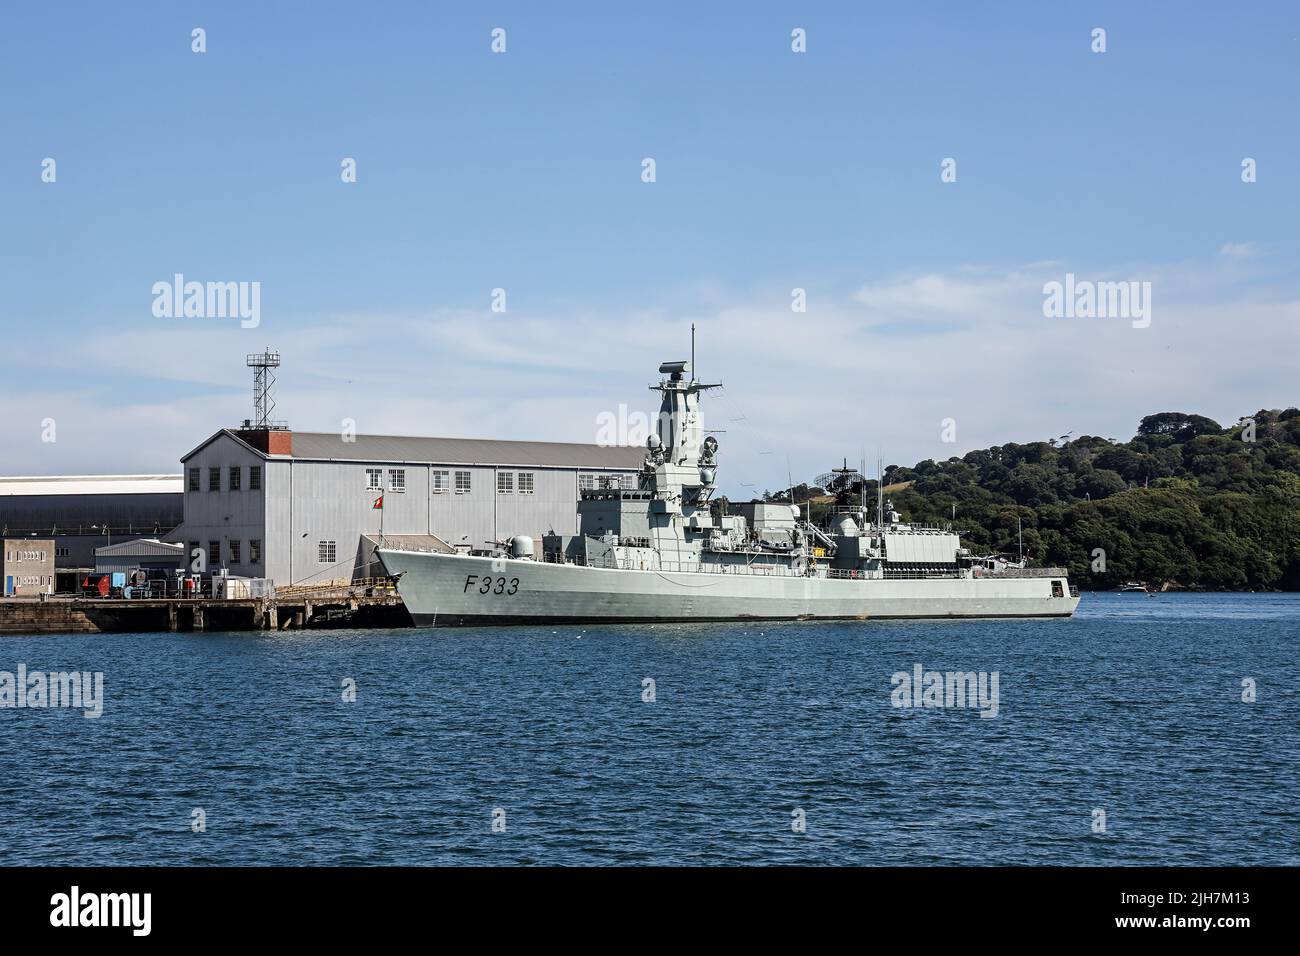 La Frégate F333 s'est amarrée à South Yard, dans le chantier naval de Devonport, sur les rives de la rivière Tamar. NRP Bartolomeu Dias est dans la marine portugaise. Banque D'Images